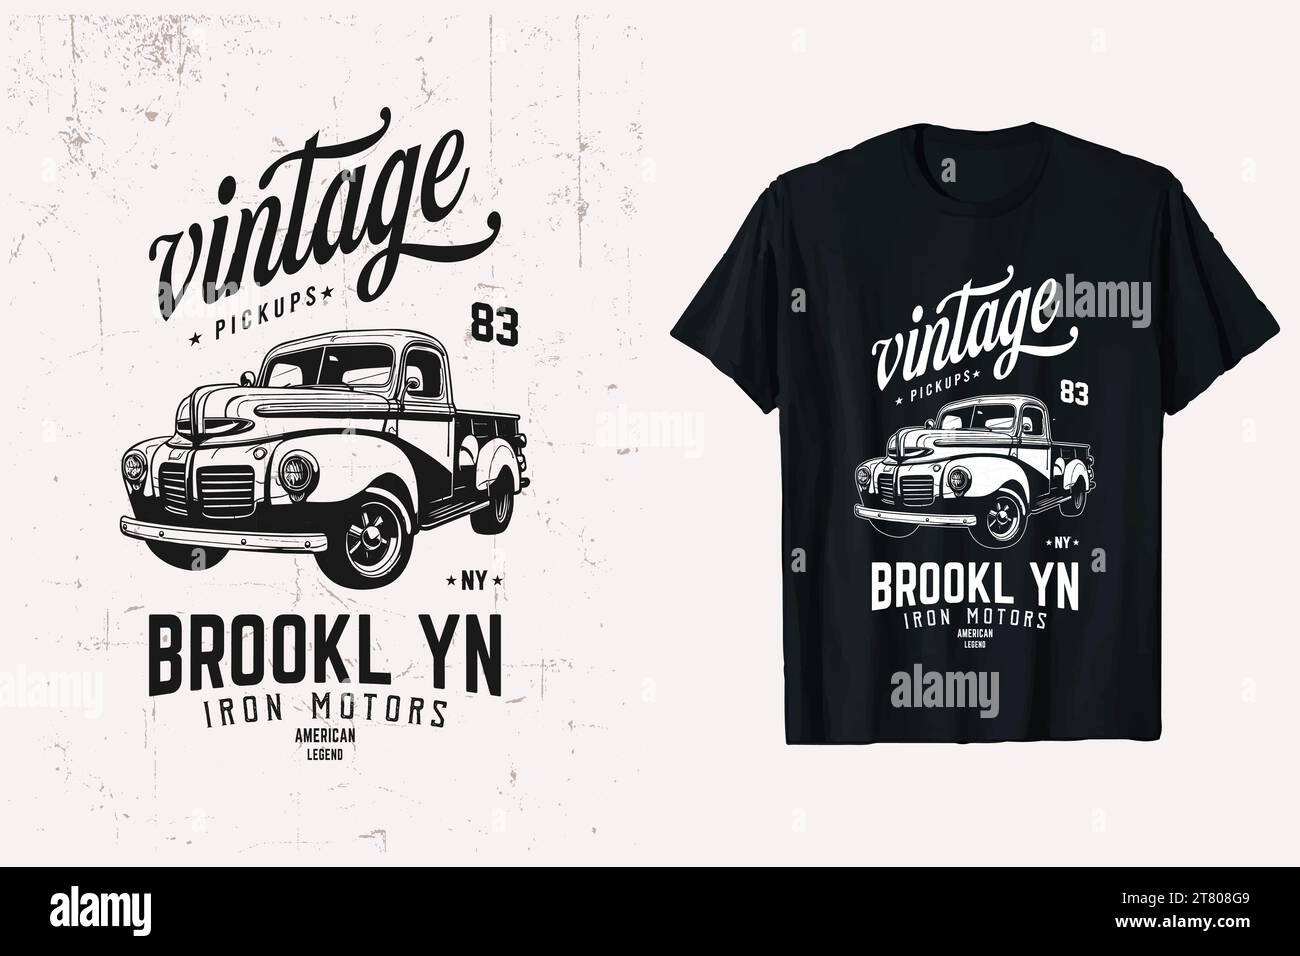 T-shirt vintage pick-up. Grafica della t-shirt vettoriale American Chevy Truck. Vecchio modello di t-shirt Chevrolet per camion. sfondo bianco e nero. Illustrazione Vettoriale